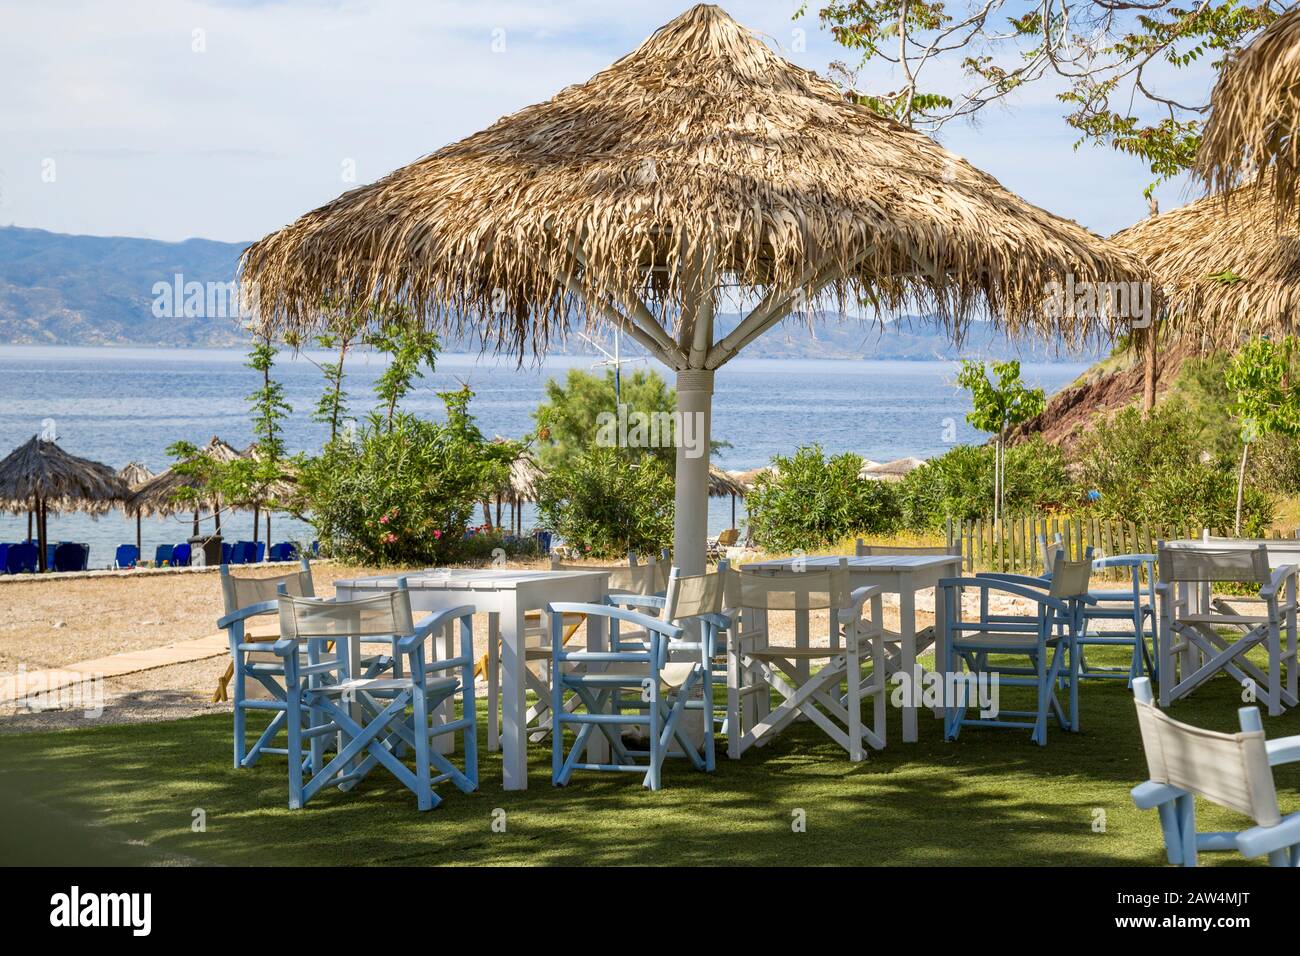 Palapa ombreggiava tavoli e sedie sulla spiaggia di Vlichos sull'isola di Hydra, una delle isole Saroniche nel Mar Egeo. Foto Stock